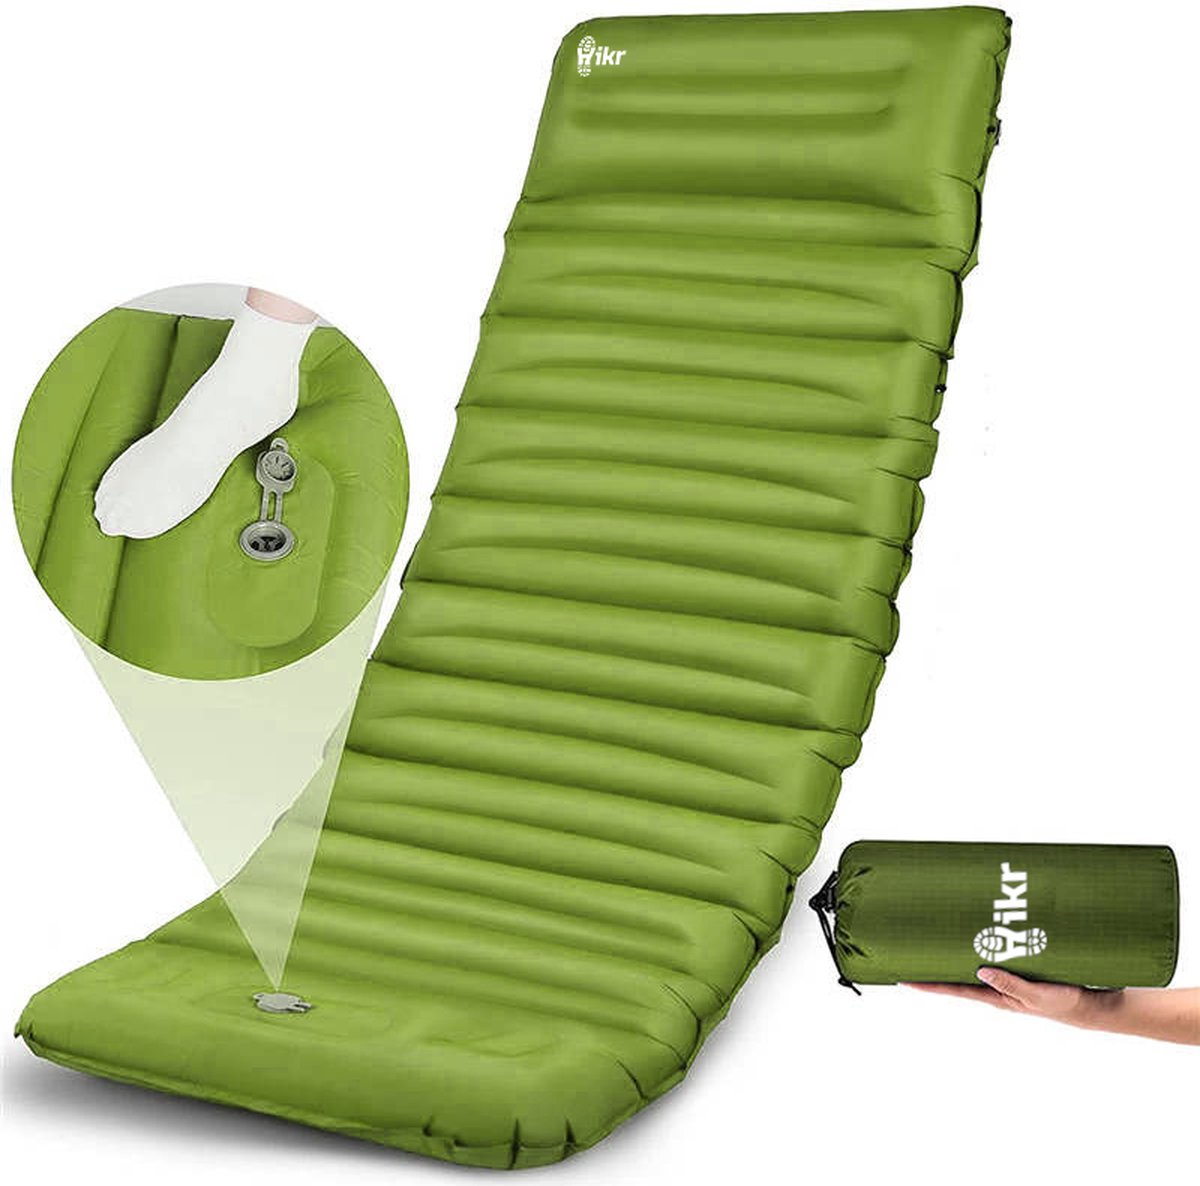 Hikr® Slaapmat 10cm+ dikte - Zelfopblazend met voetpomp - Comfortabel luchtmatras - Slaapmatje eenpersoons uit te breiden tot tweepersoons - Luchtbed met ingebouwde pomp